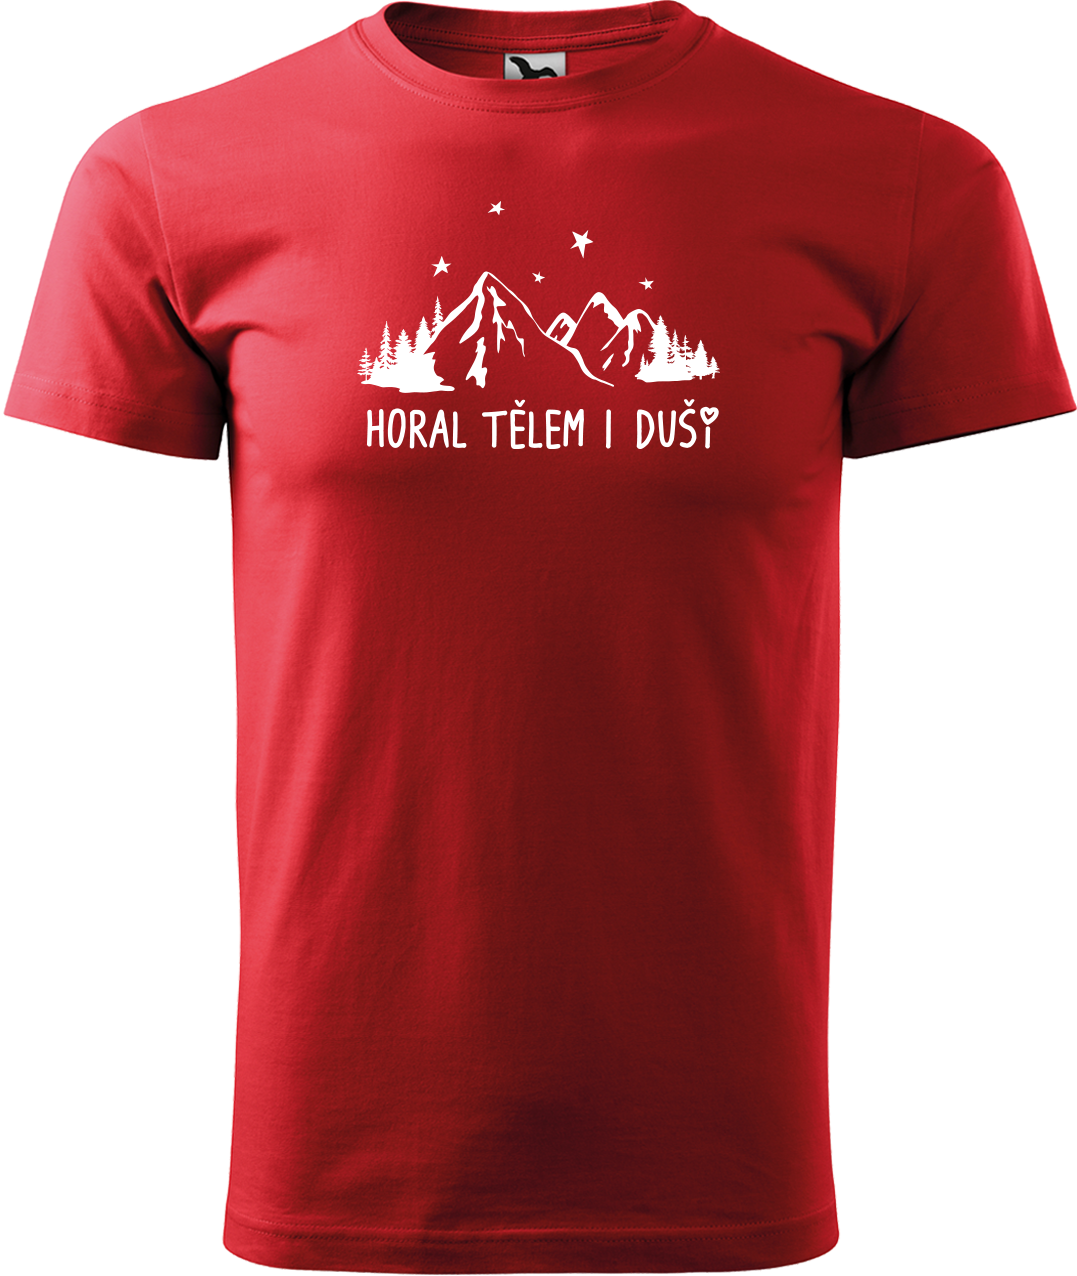 Pánské tričko na hory - Horal tělem i duší Velikost: XL, Barva: Červená (07)